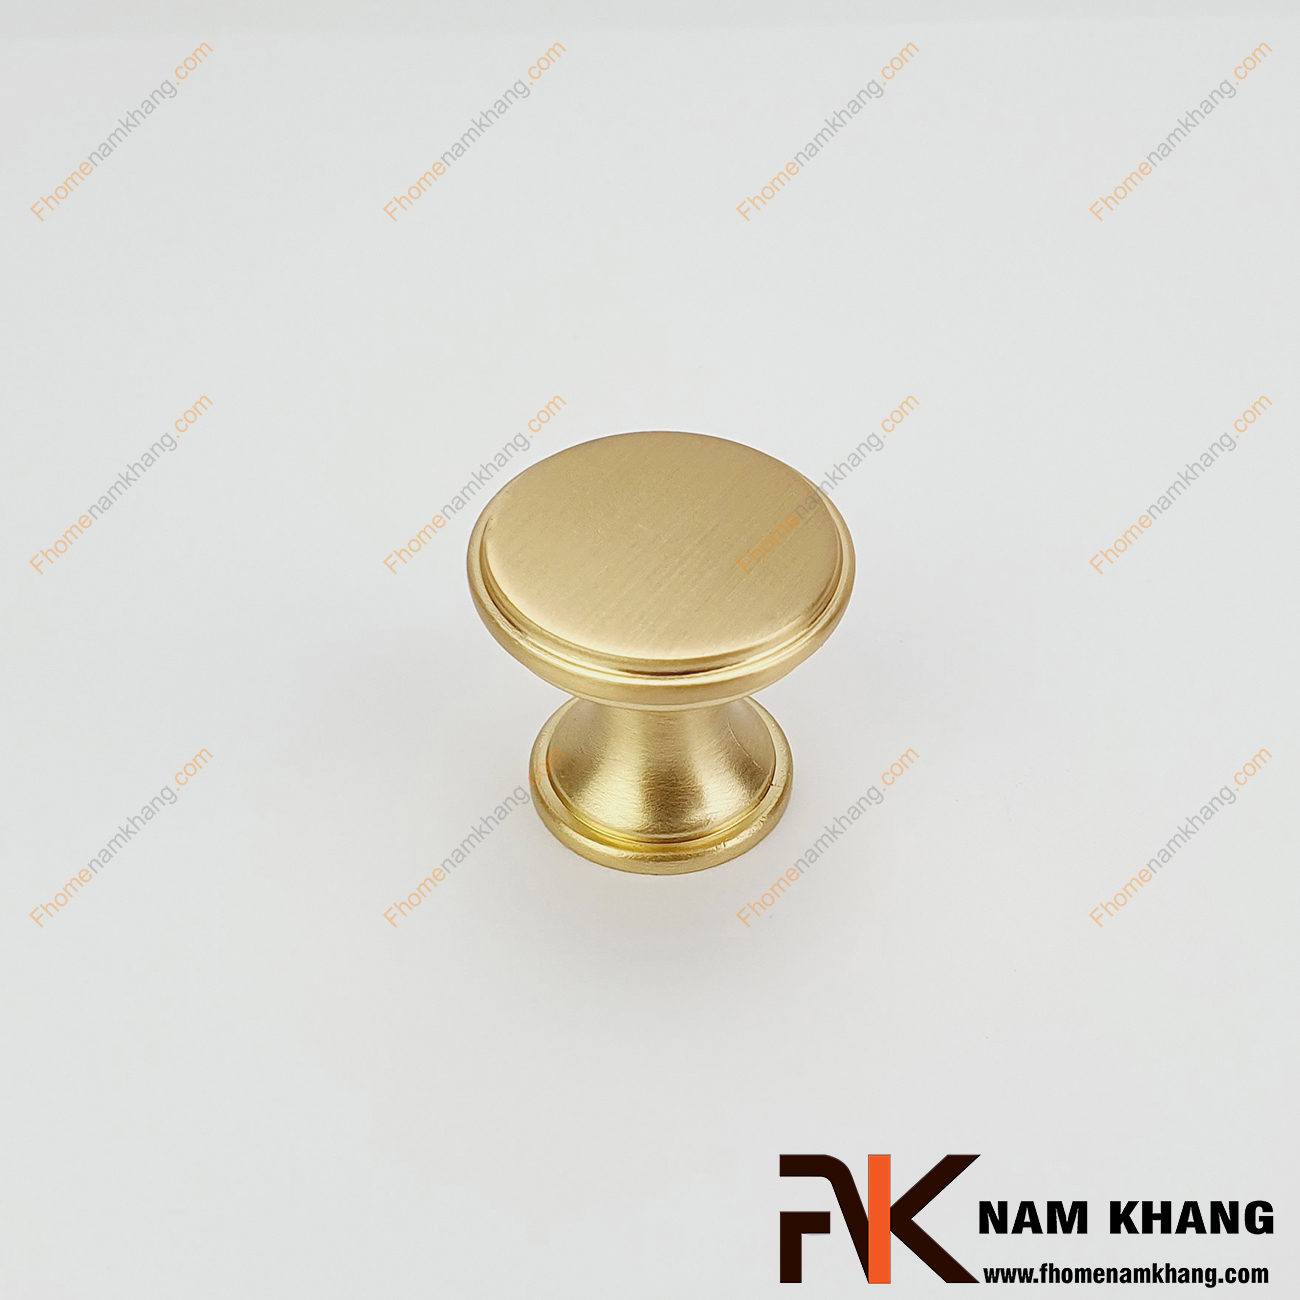 Sản phẩm Núm cửa tủ màu vàng mờ NK415L-VM phong cách đơn giản, tinh tế và rất cao cấp, có thể sử dụng trên nhiều phong cách tủ kệ khác nhau.